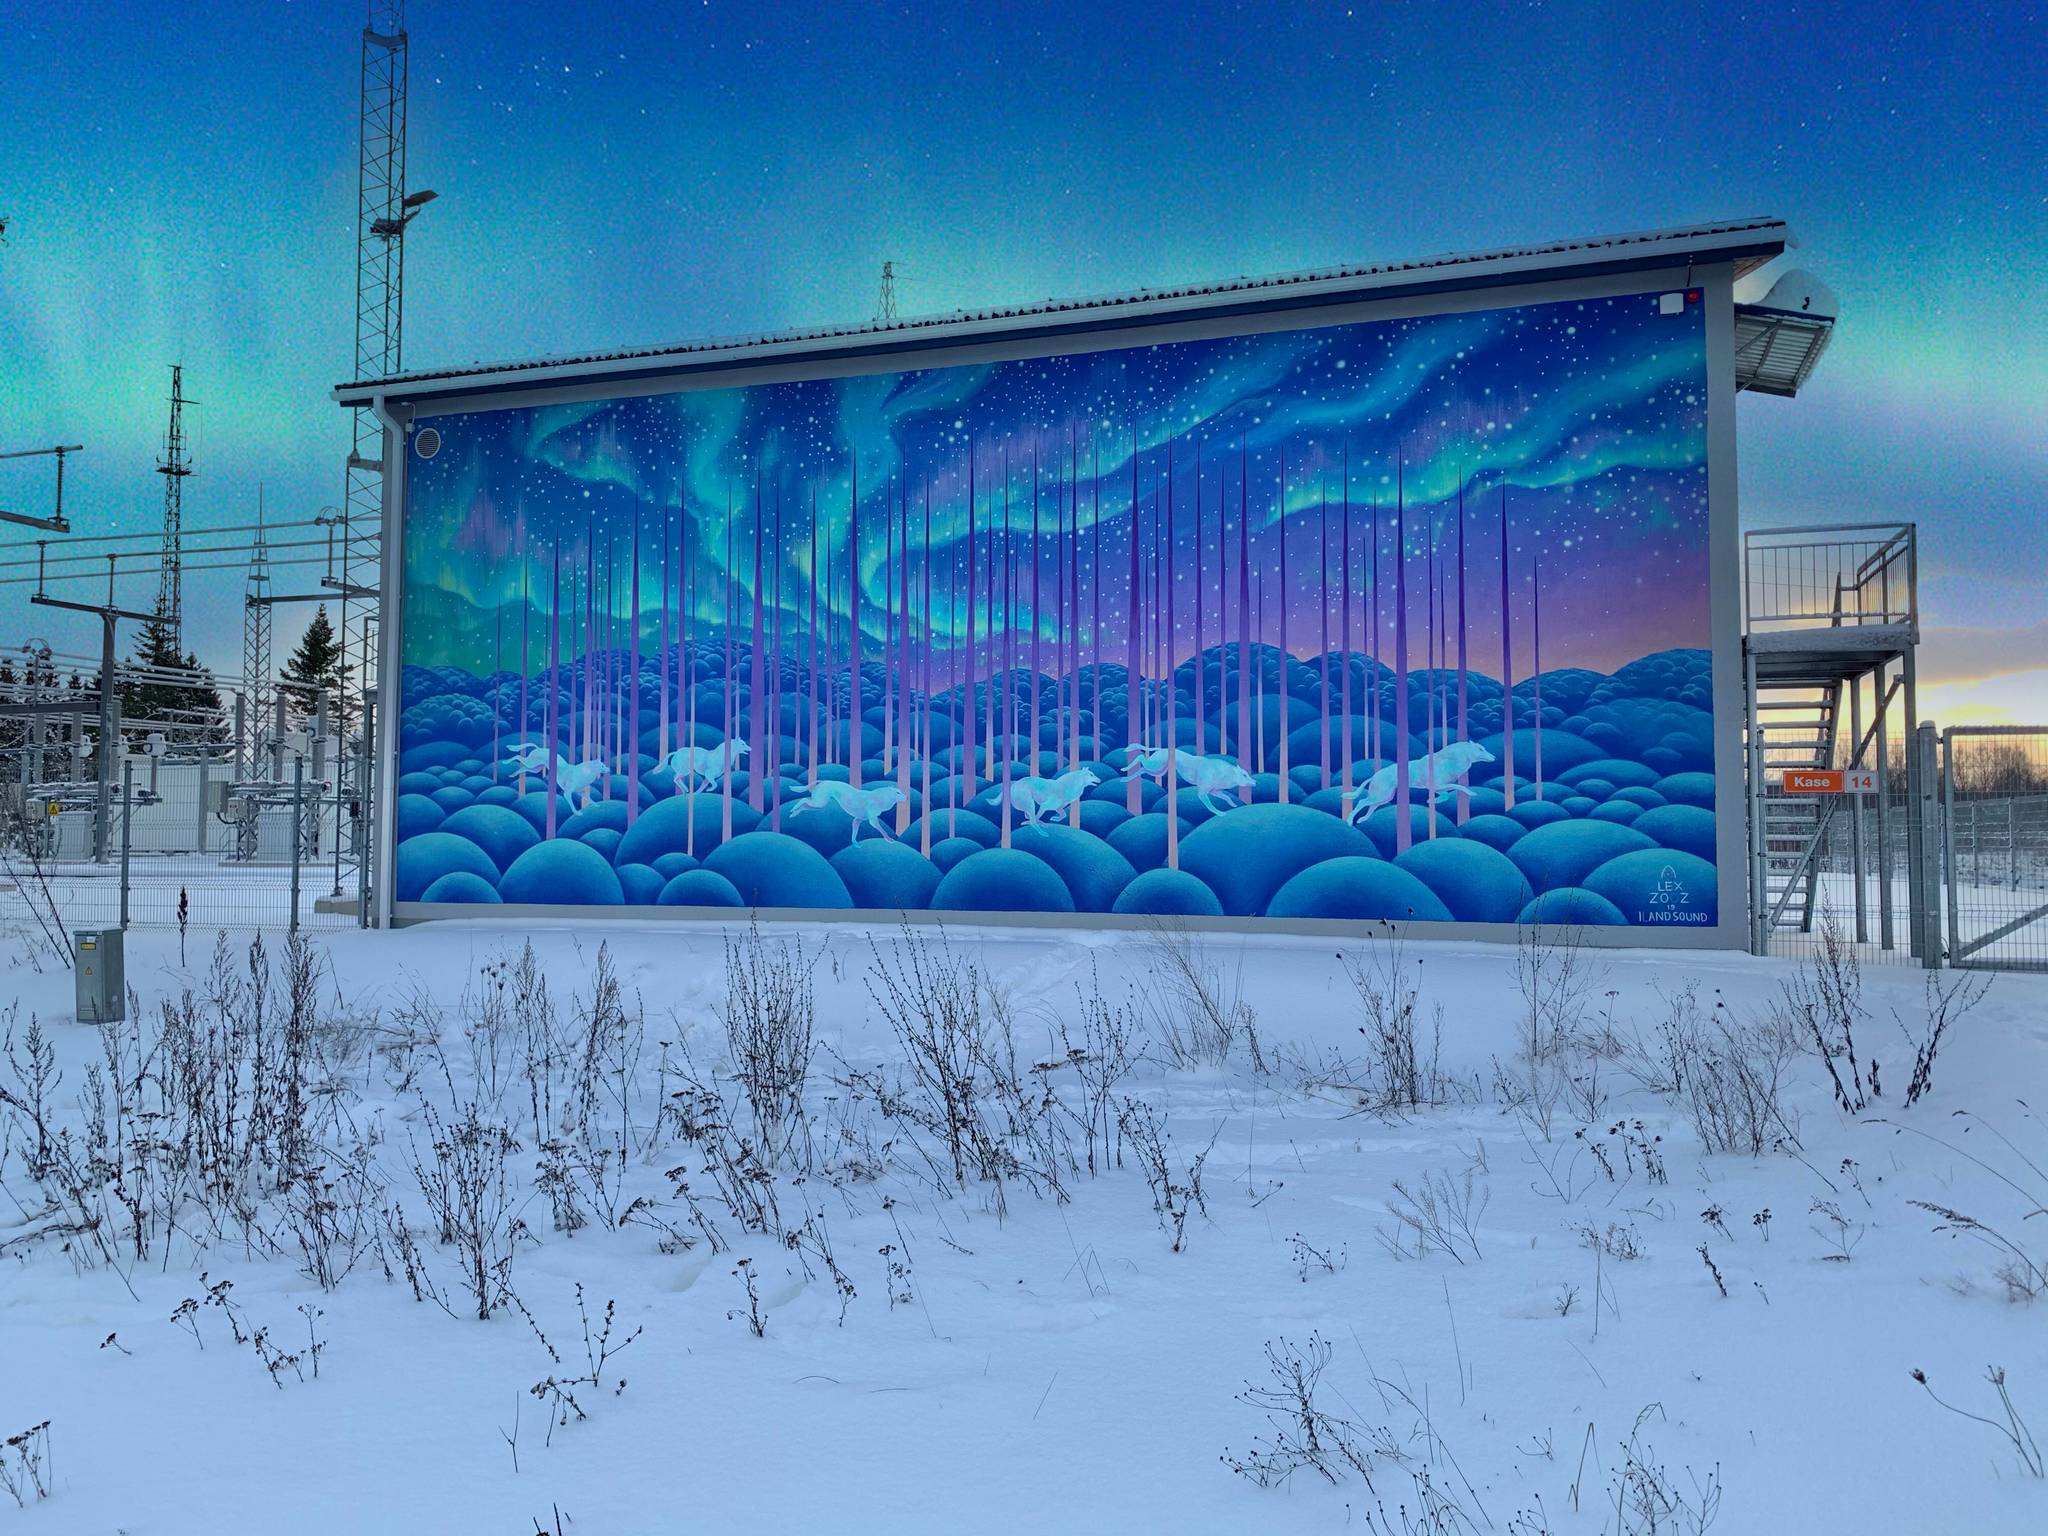 Lex Zooz&mdash;Mural “Polar wolves”